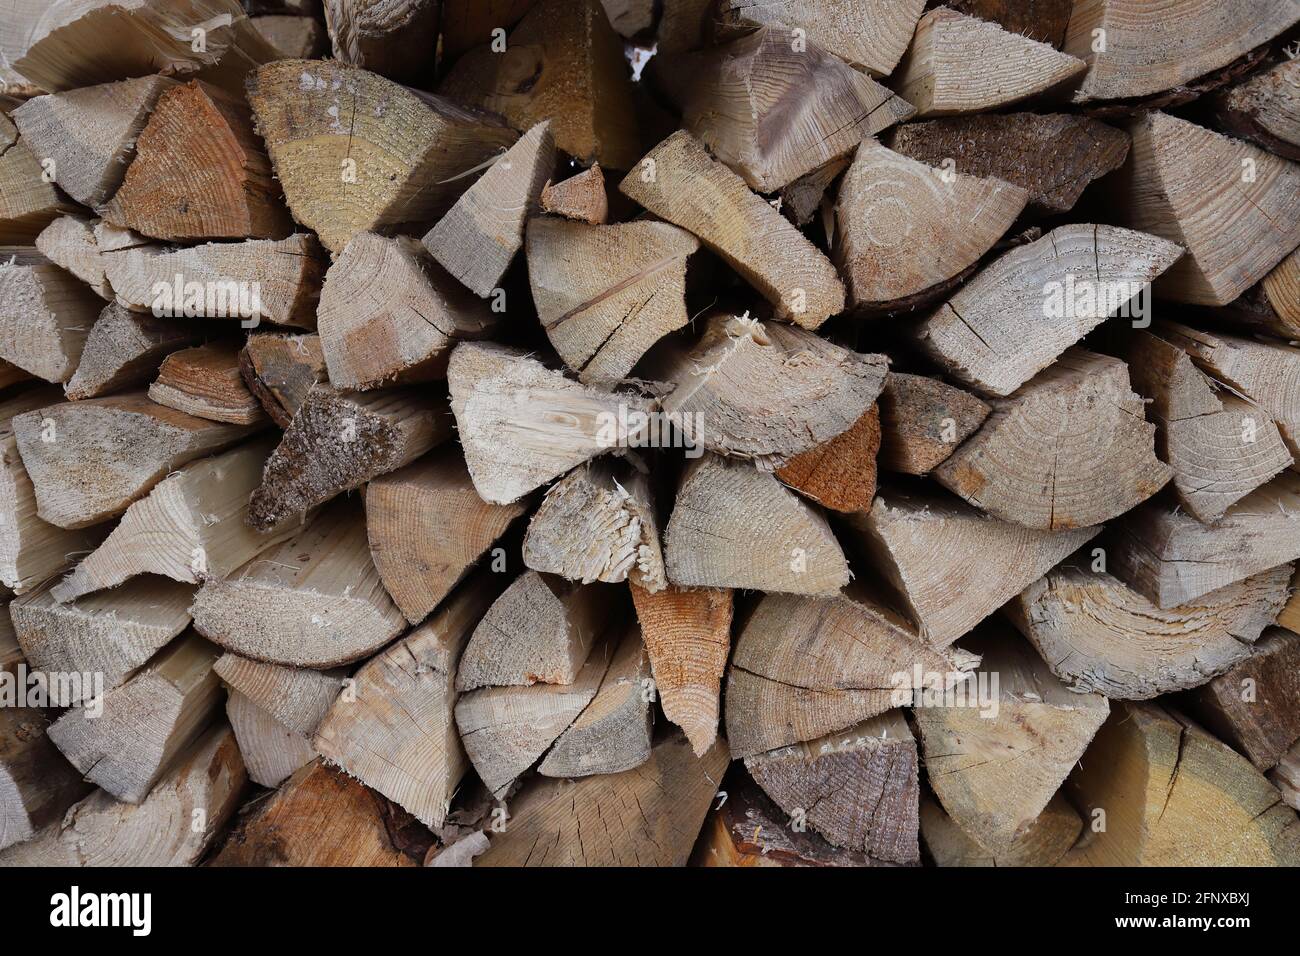 Vue rapprochée d'une pile de bois de chauffage prêt à l'emploi image plein format. Banque D'Images